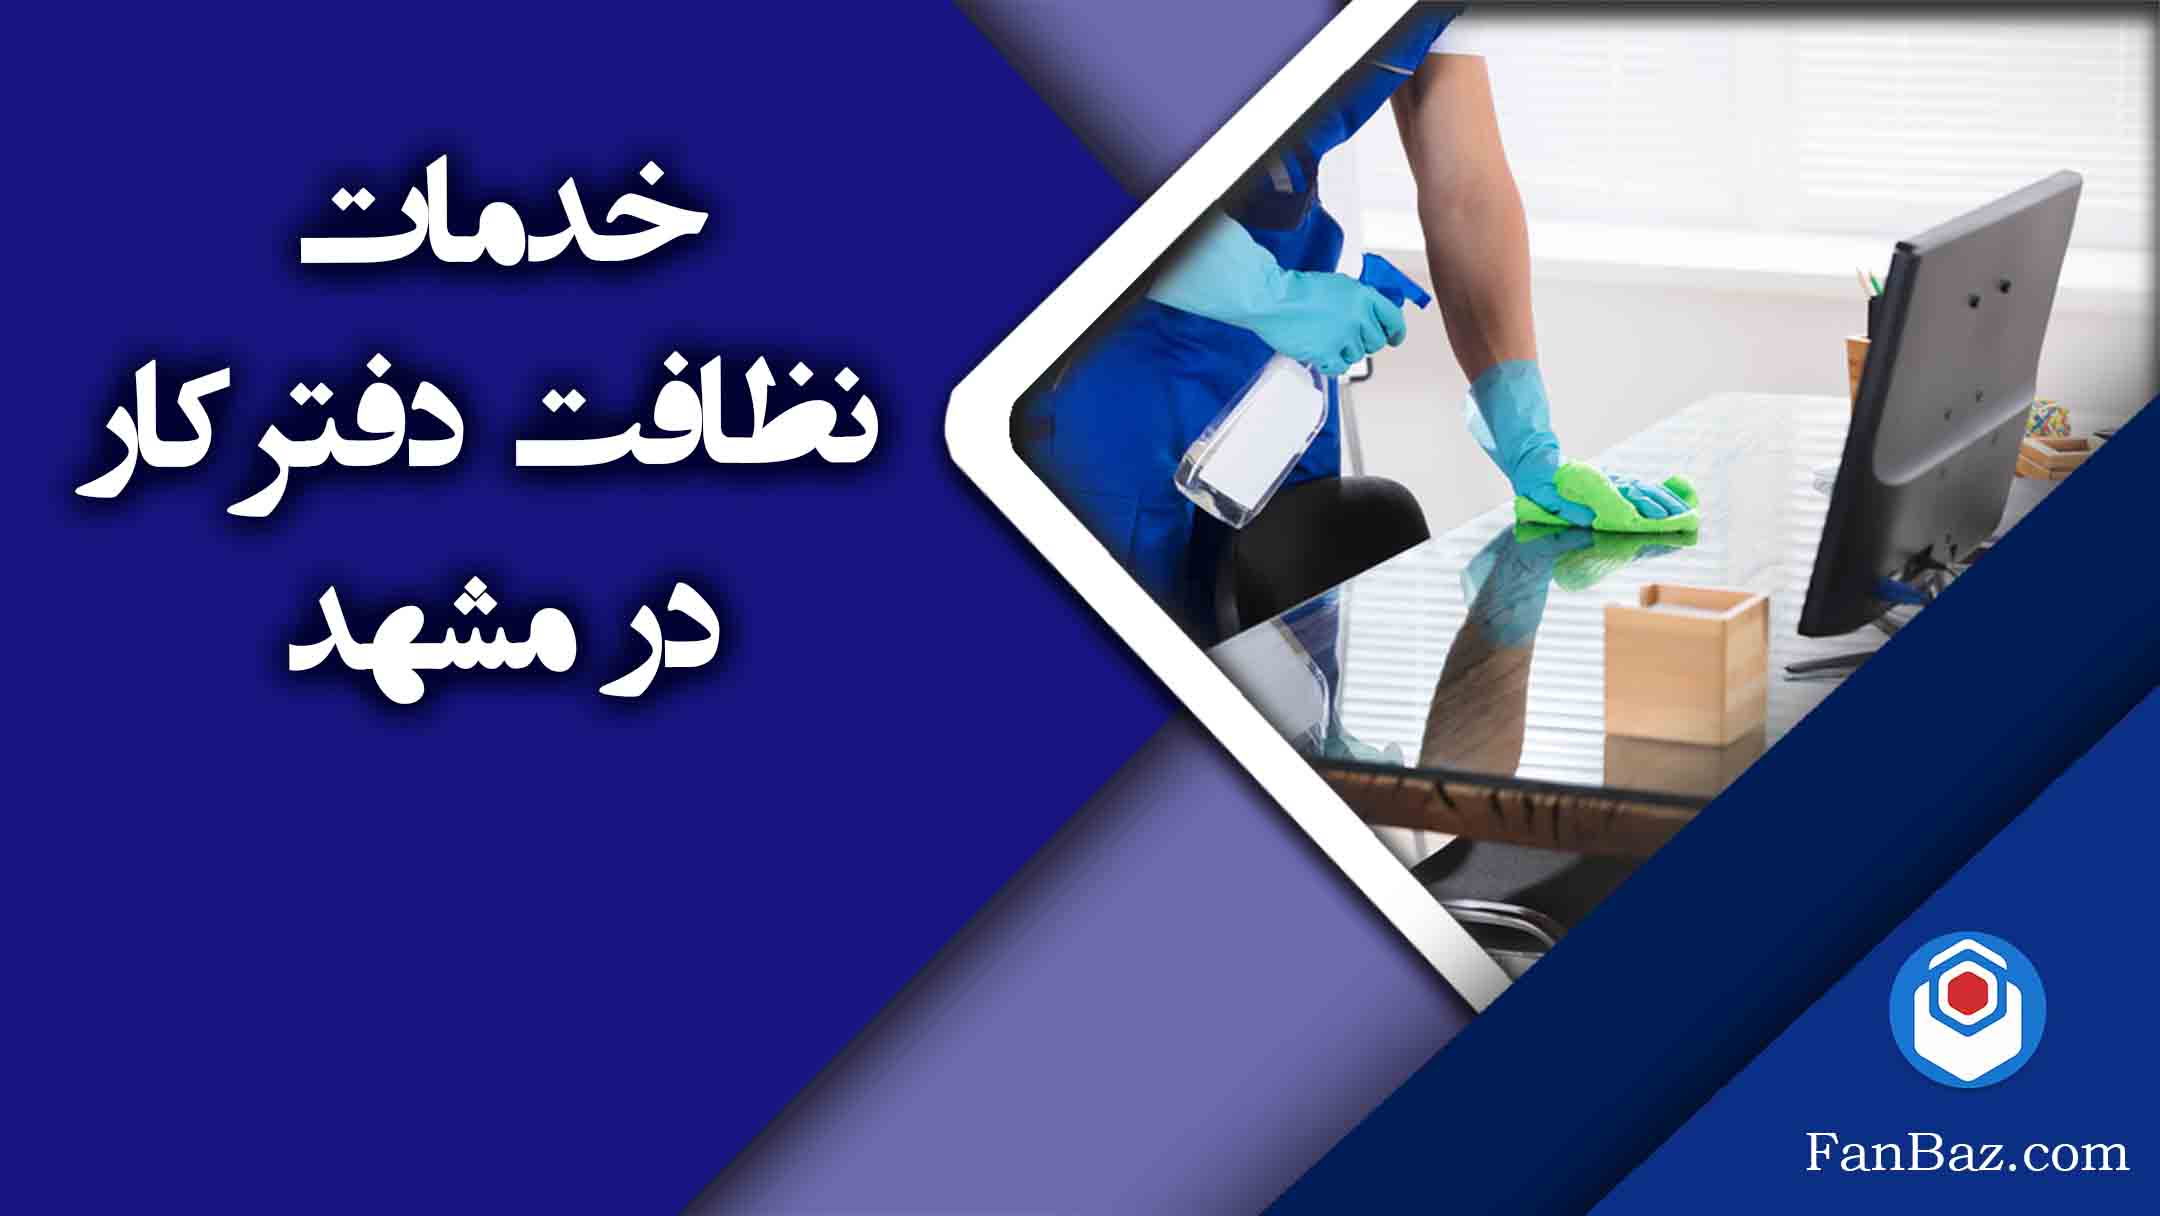 خدمات نظافت دفتر کار فن باز در مشهد